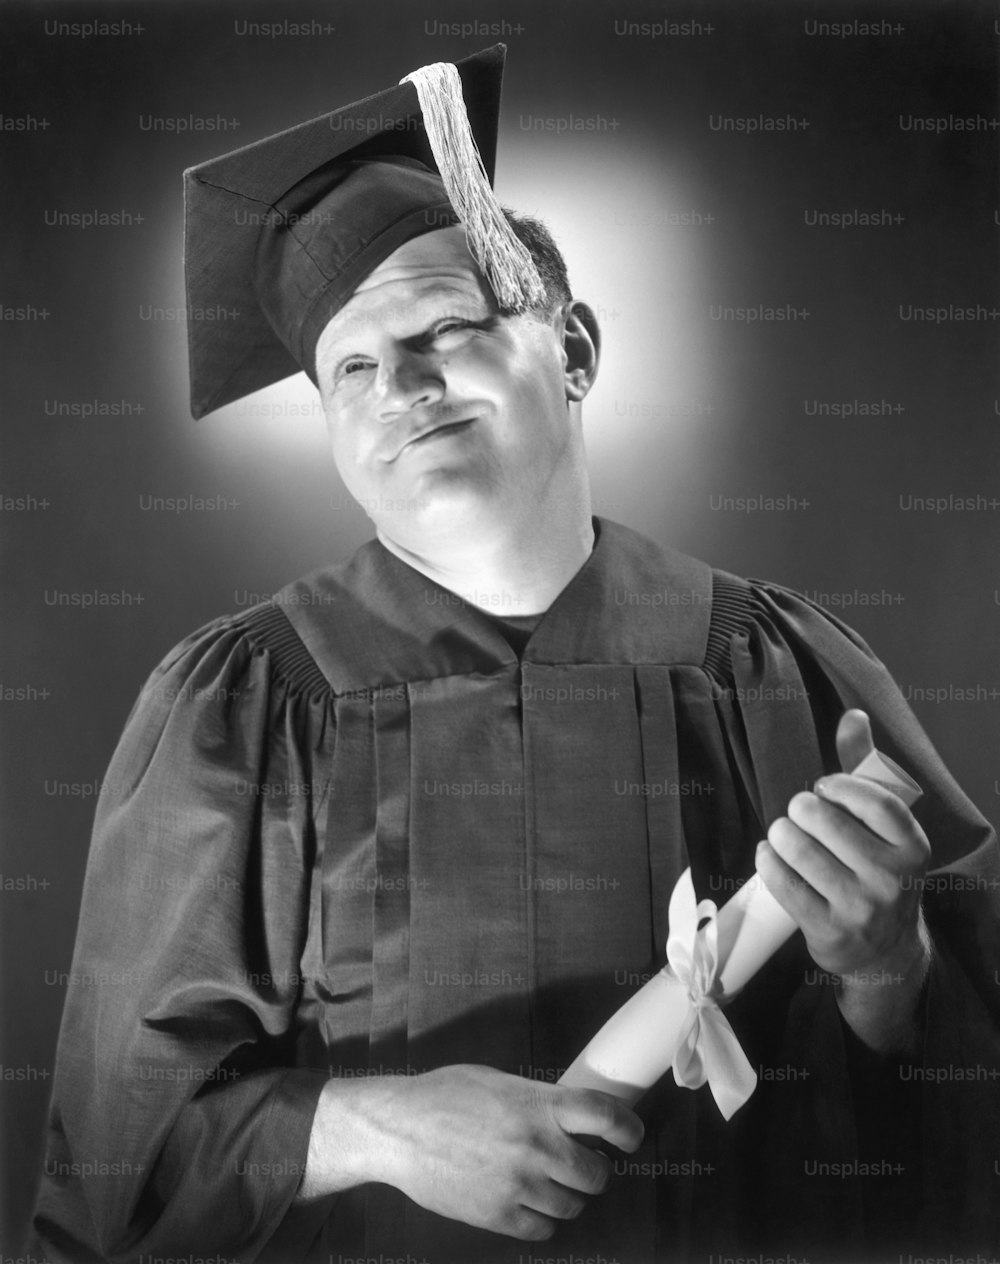 ÉTATS-UNIS - Circa 1950s : Portrait d’homme heureux en casquette et robe w/diplôme.